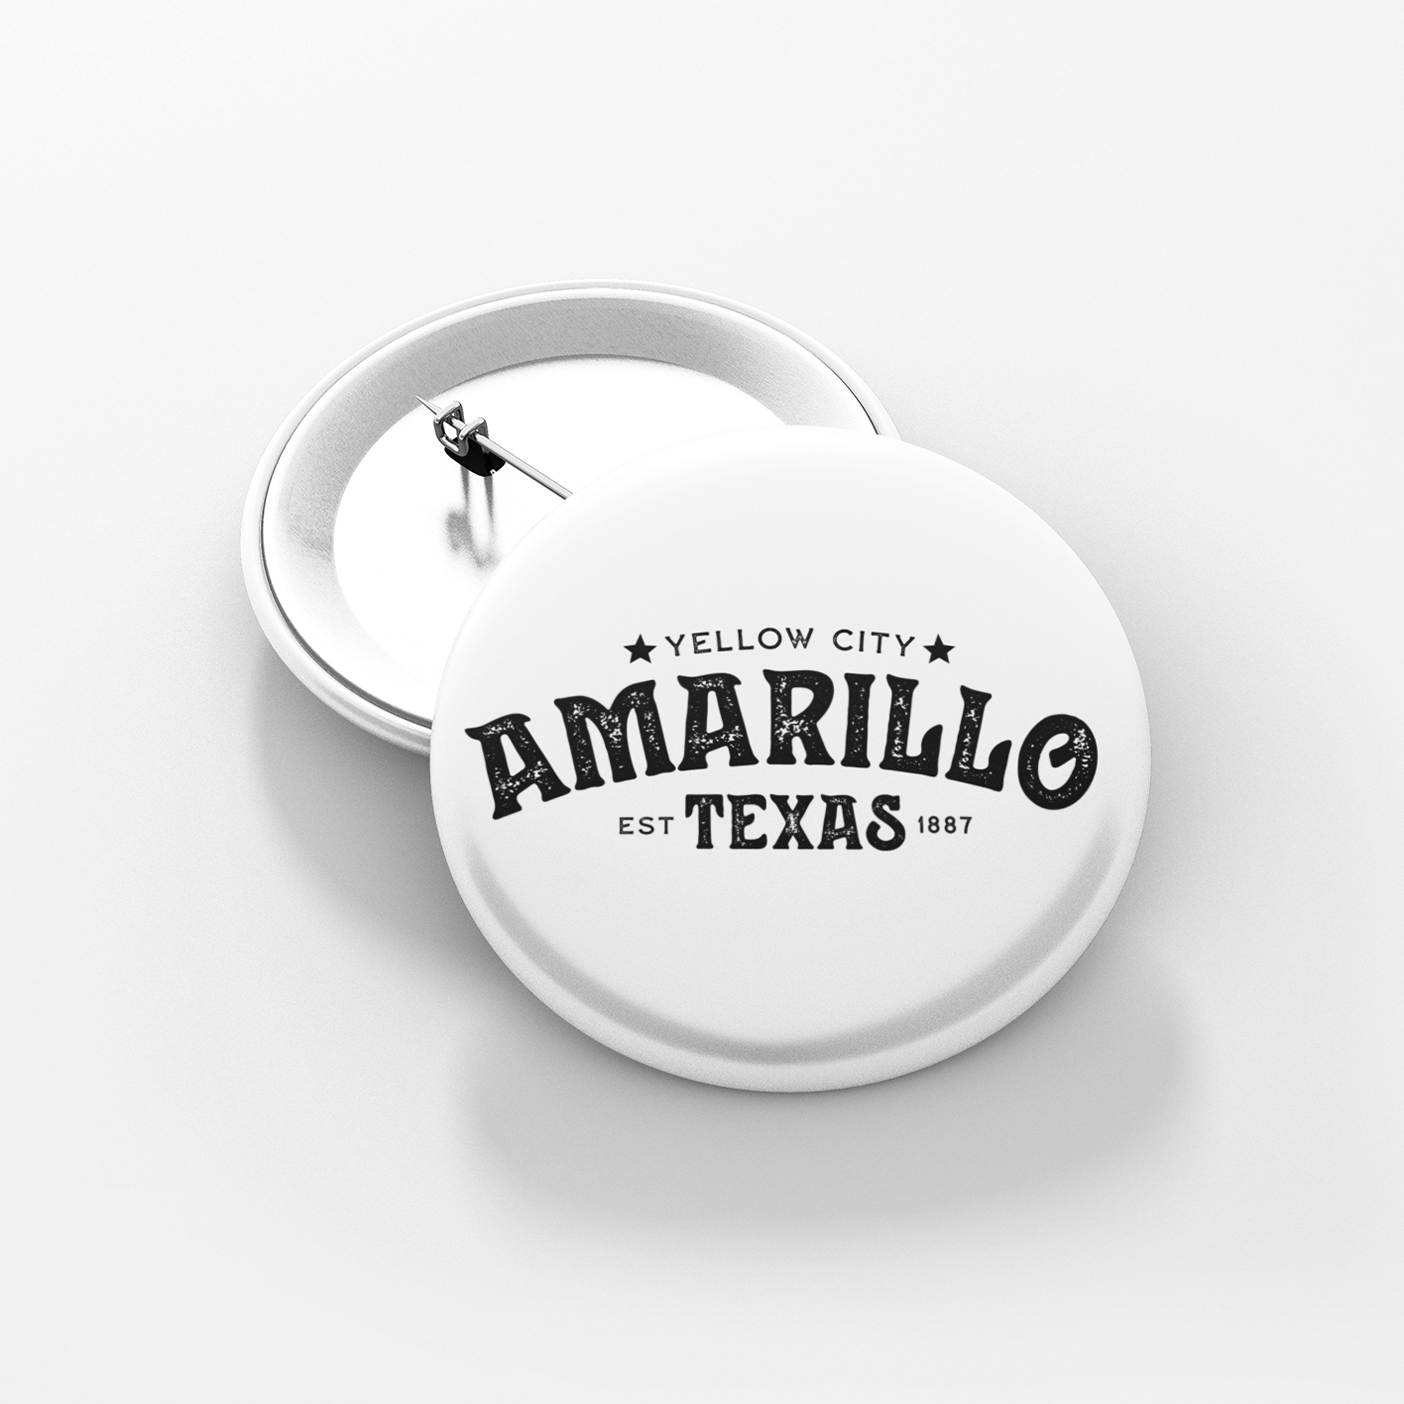 Amarillo Texas Button - Yellow City